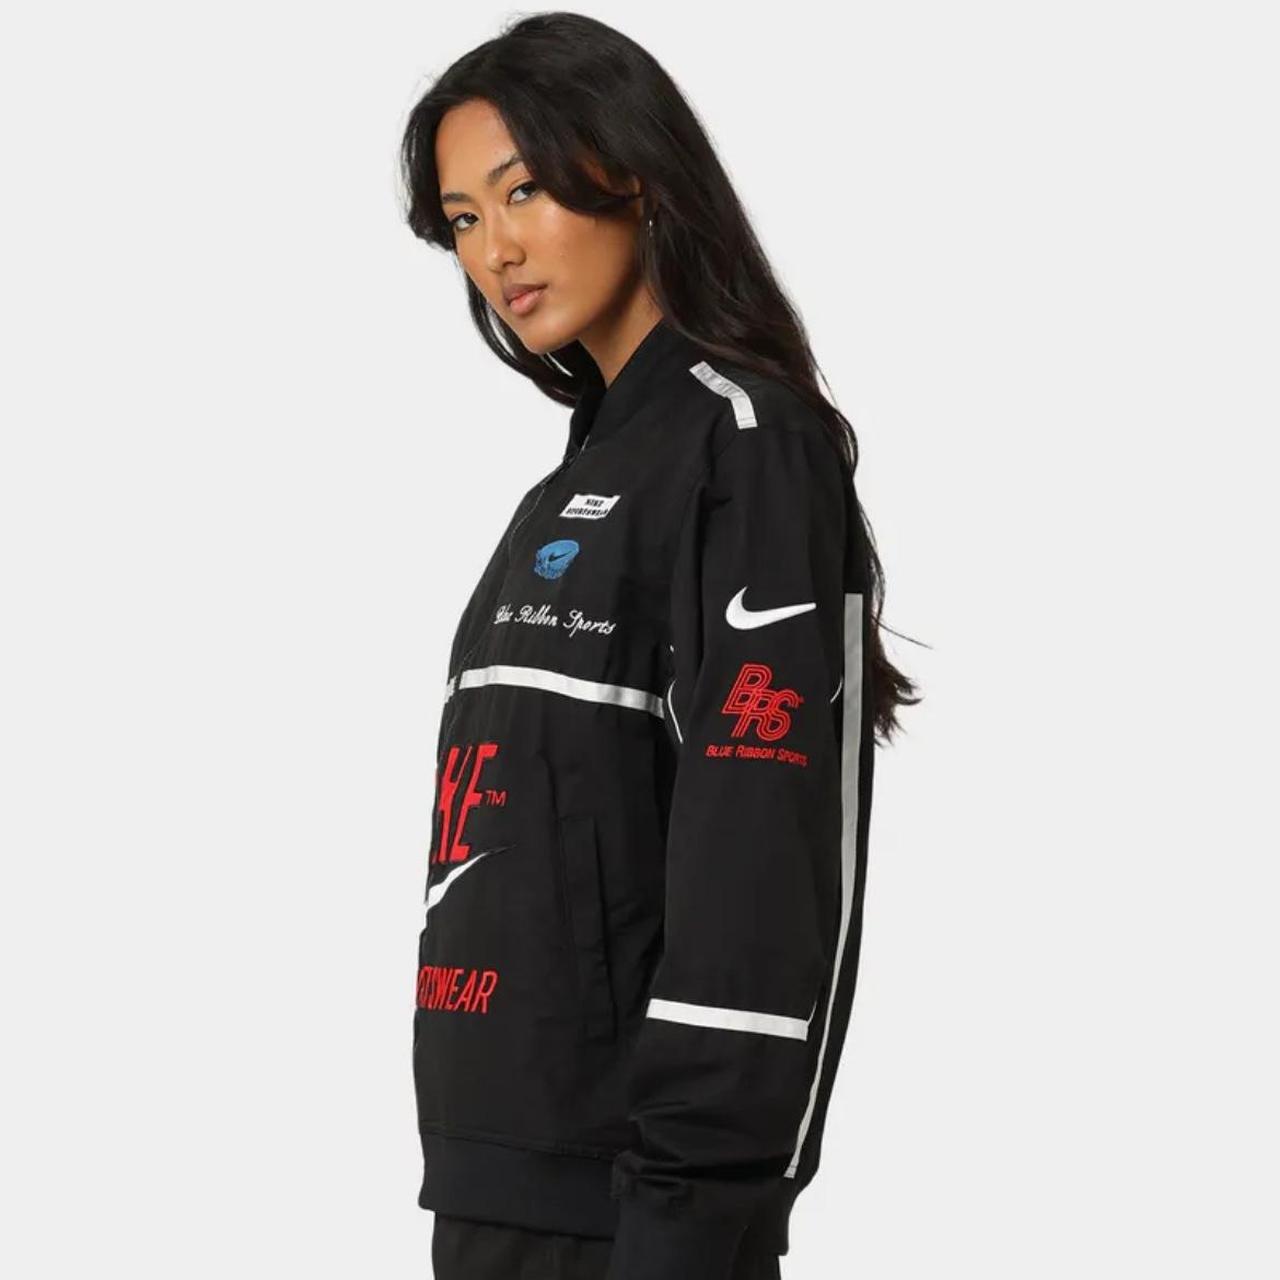 Women's or Men's (unisex) Nike Sportswear Mercato - Depop